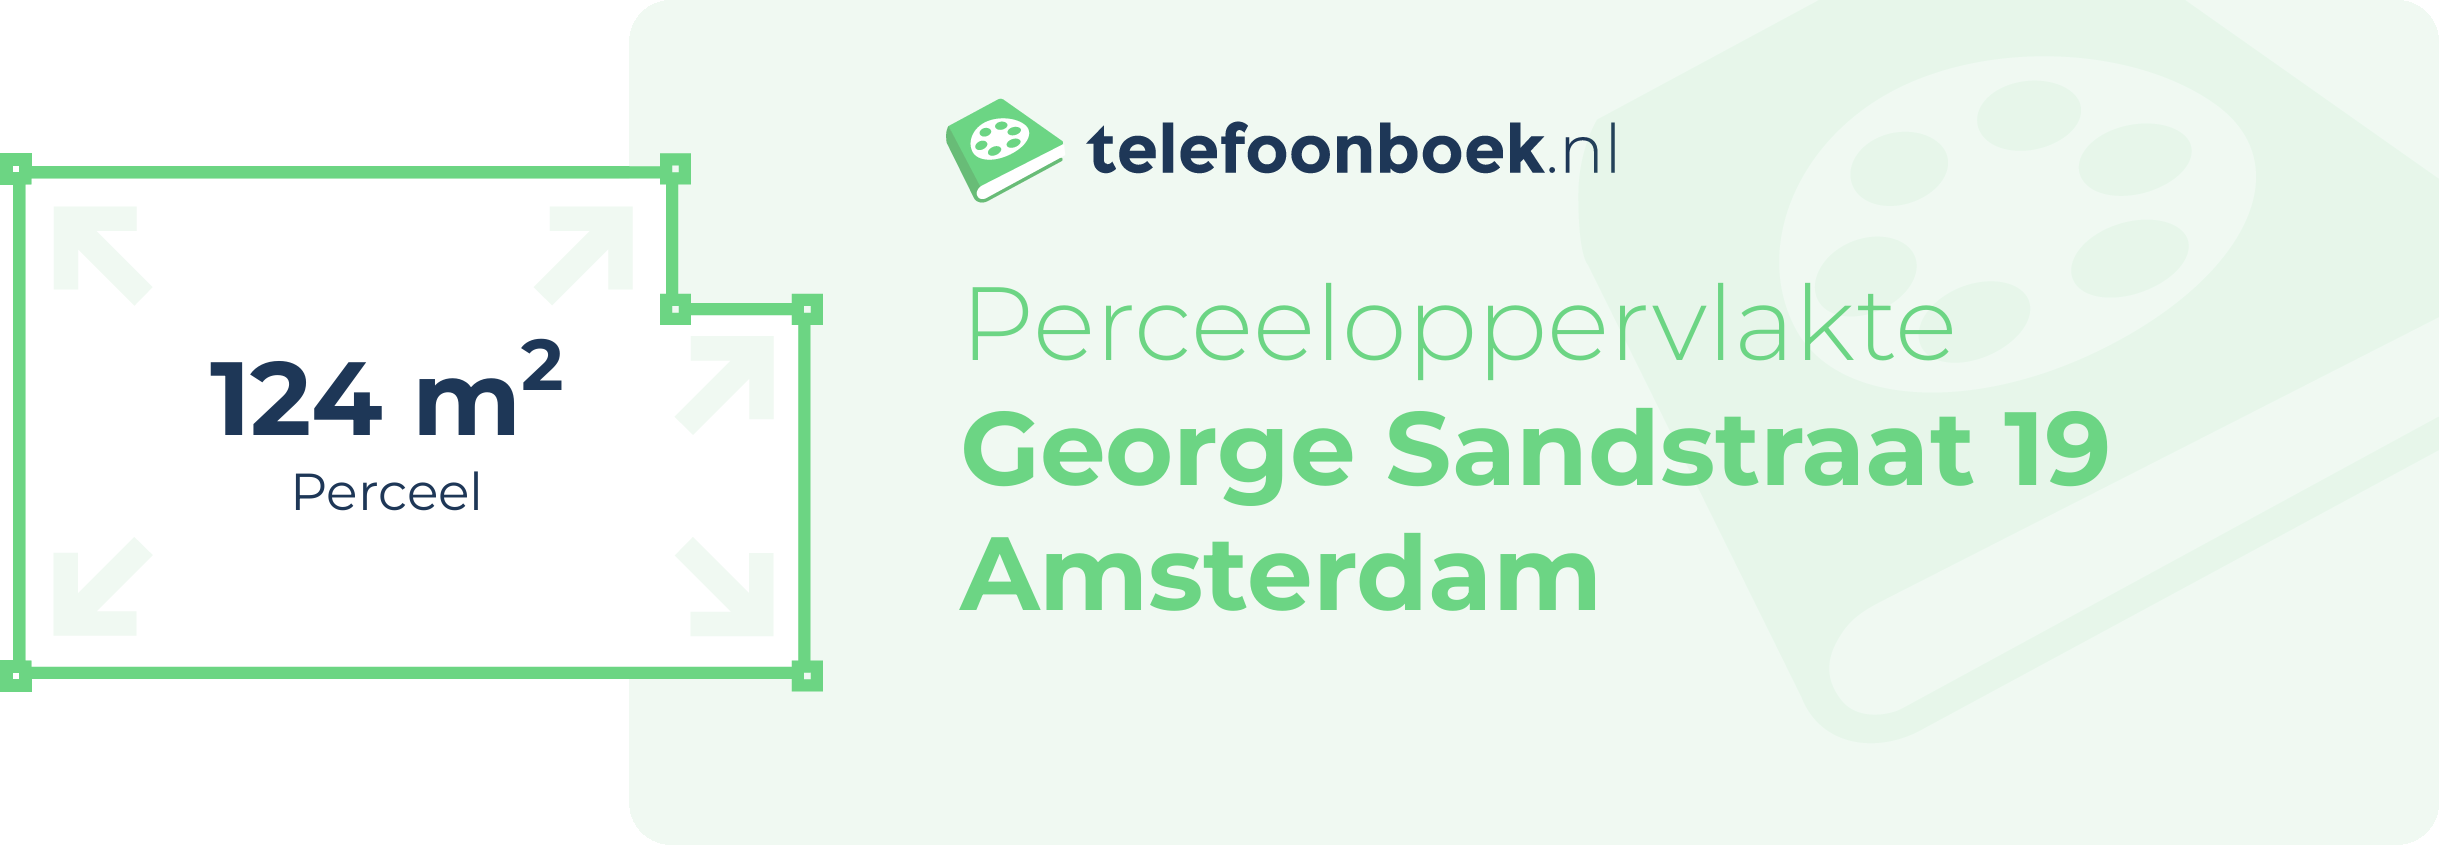 Perceeloppervlakte George Sandstraat 19 Amsterdam